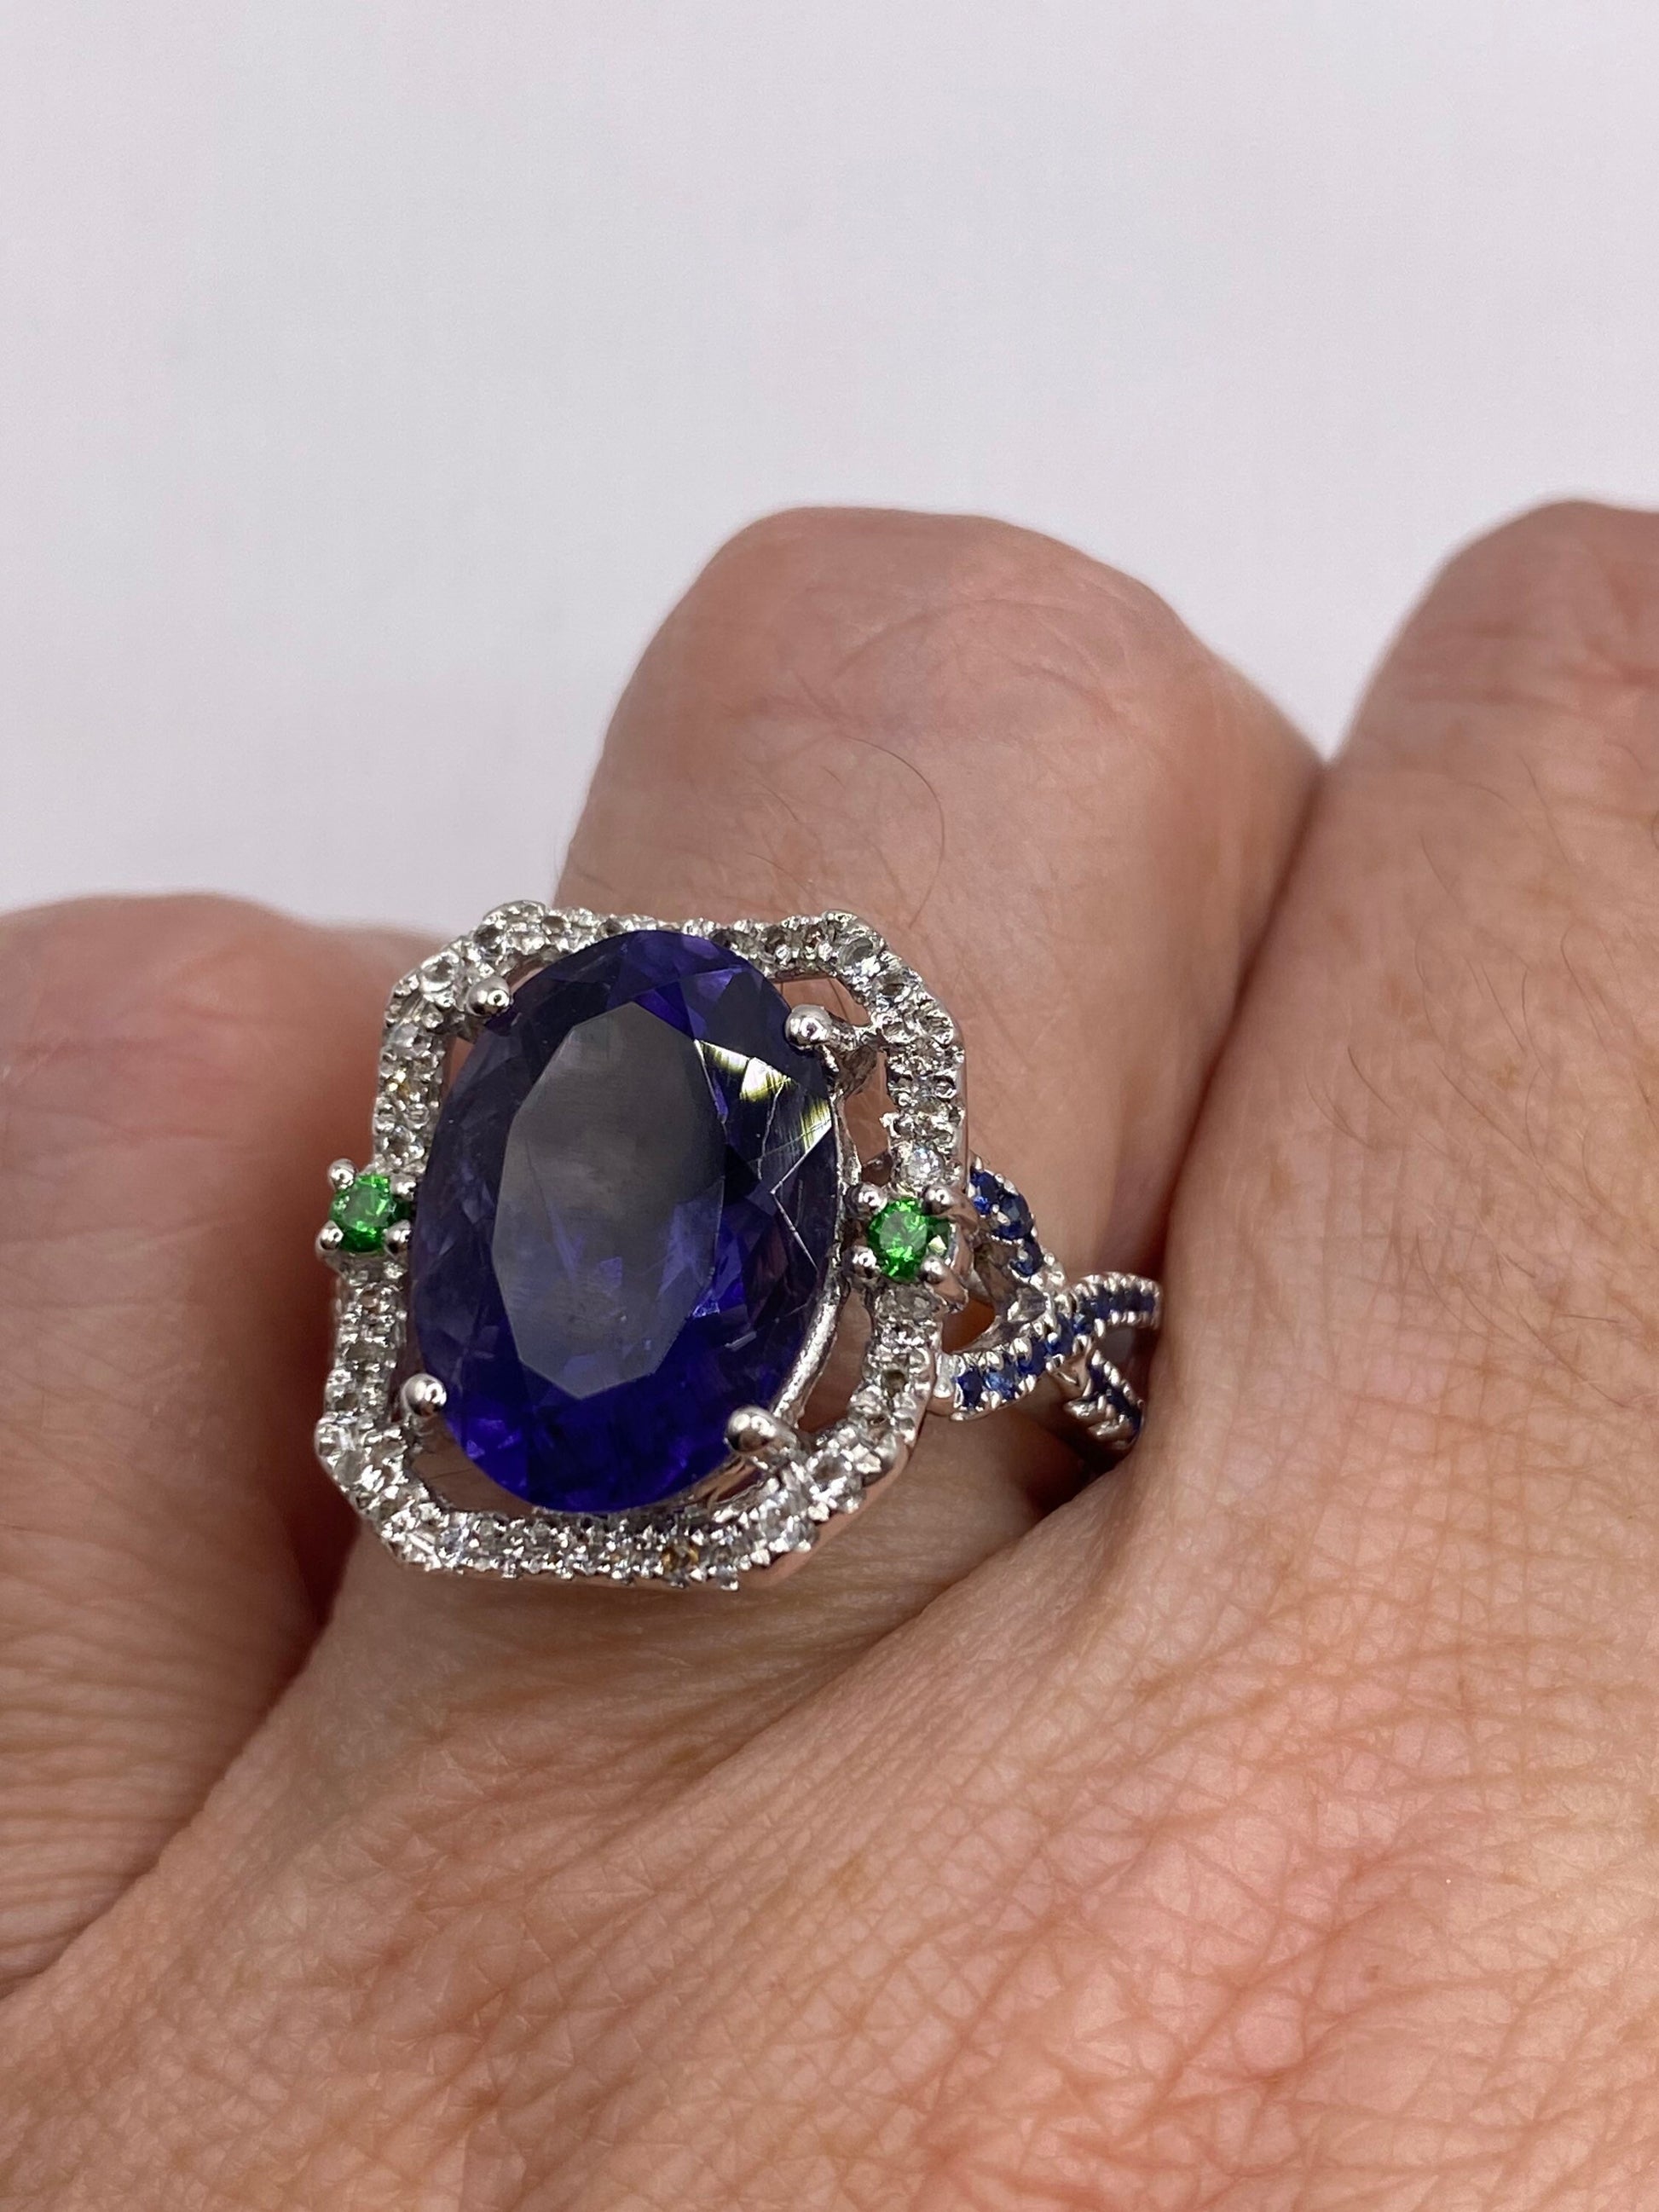 Vintage Blue Iolite 925 Sterling Silver Ring